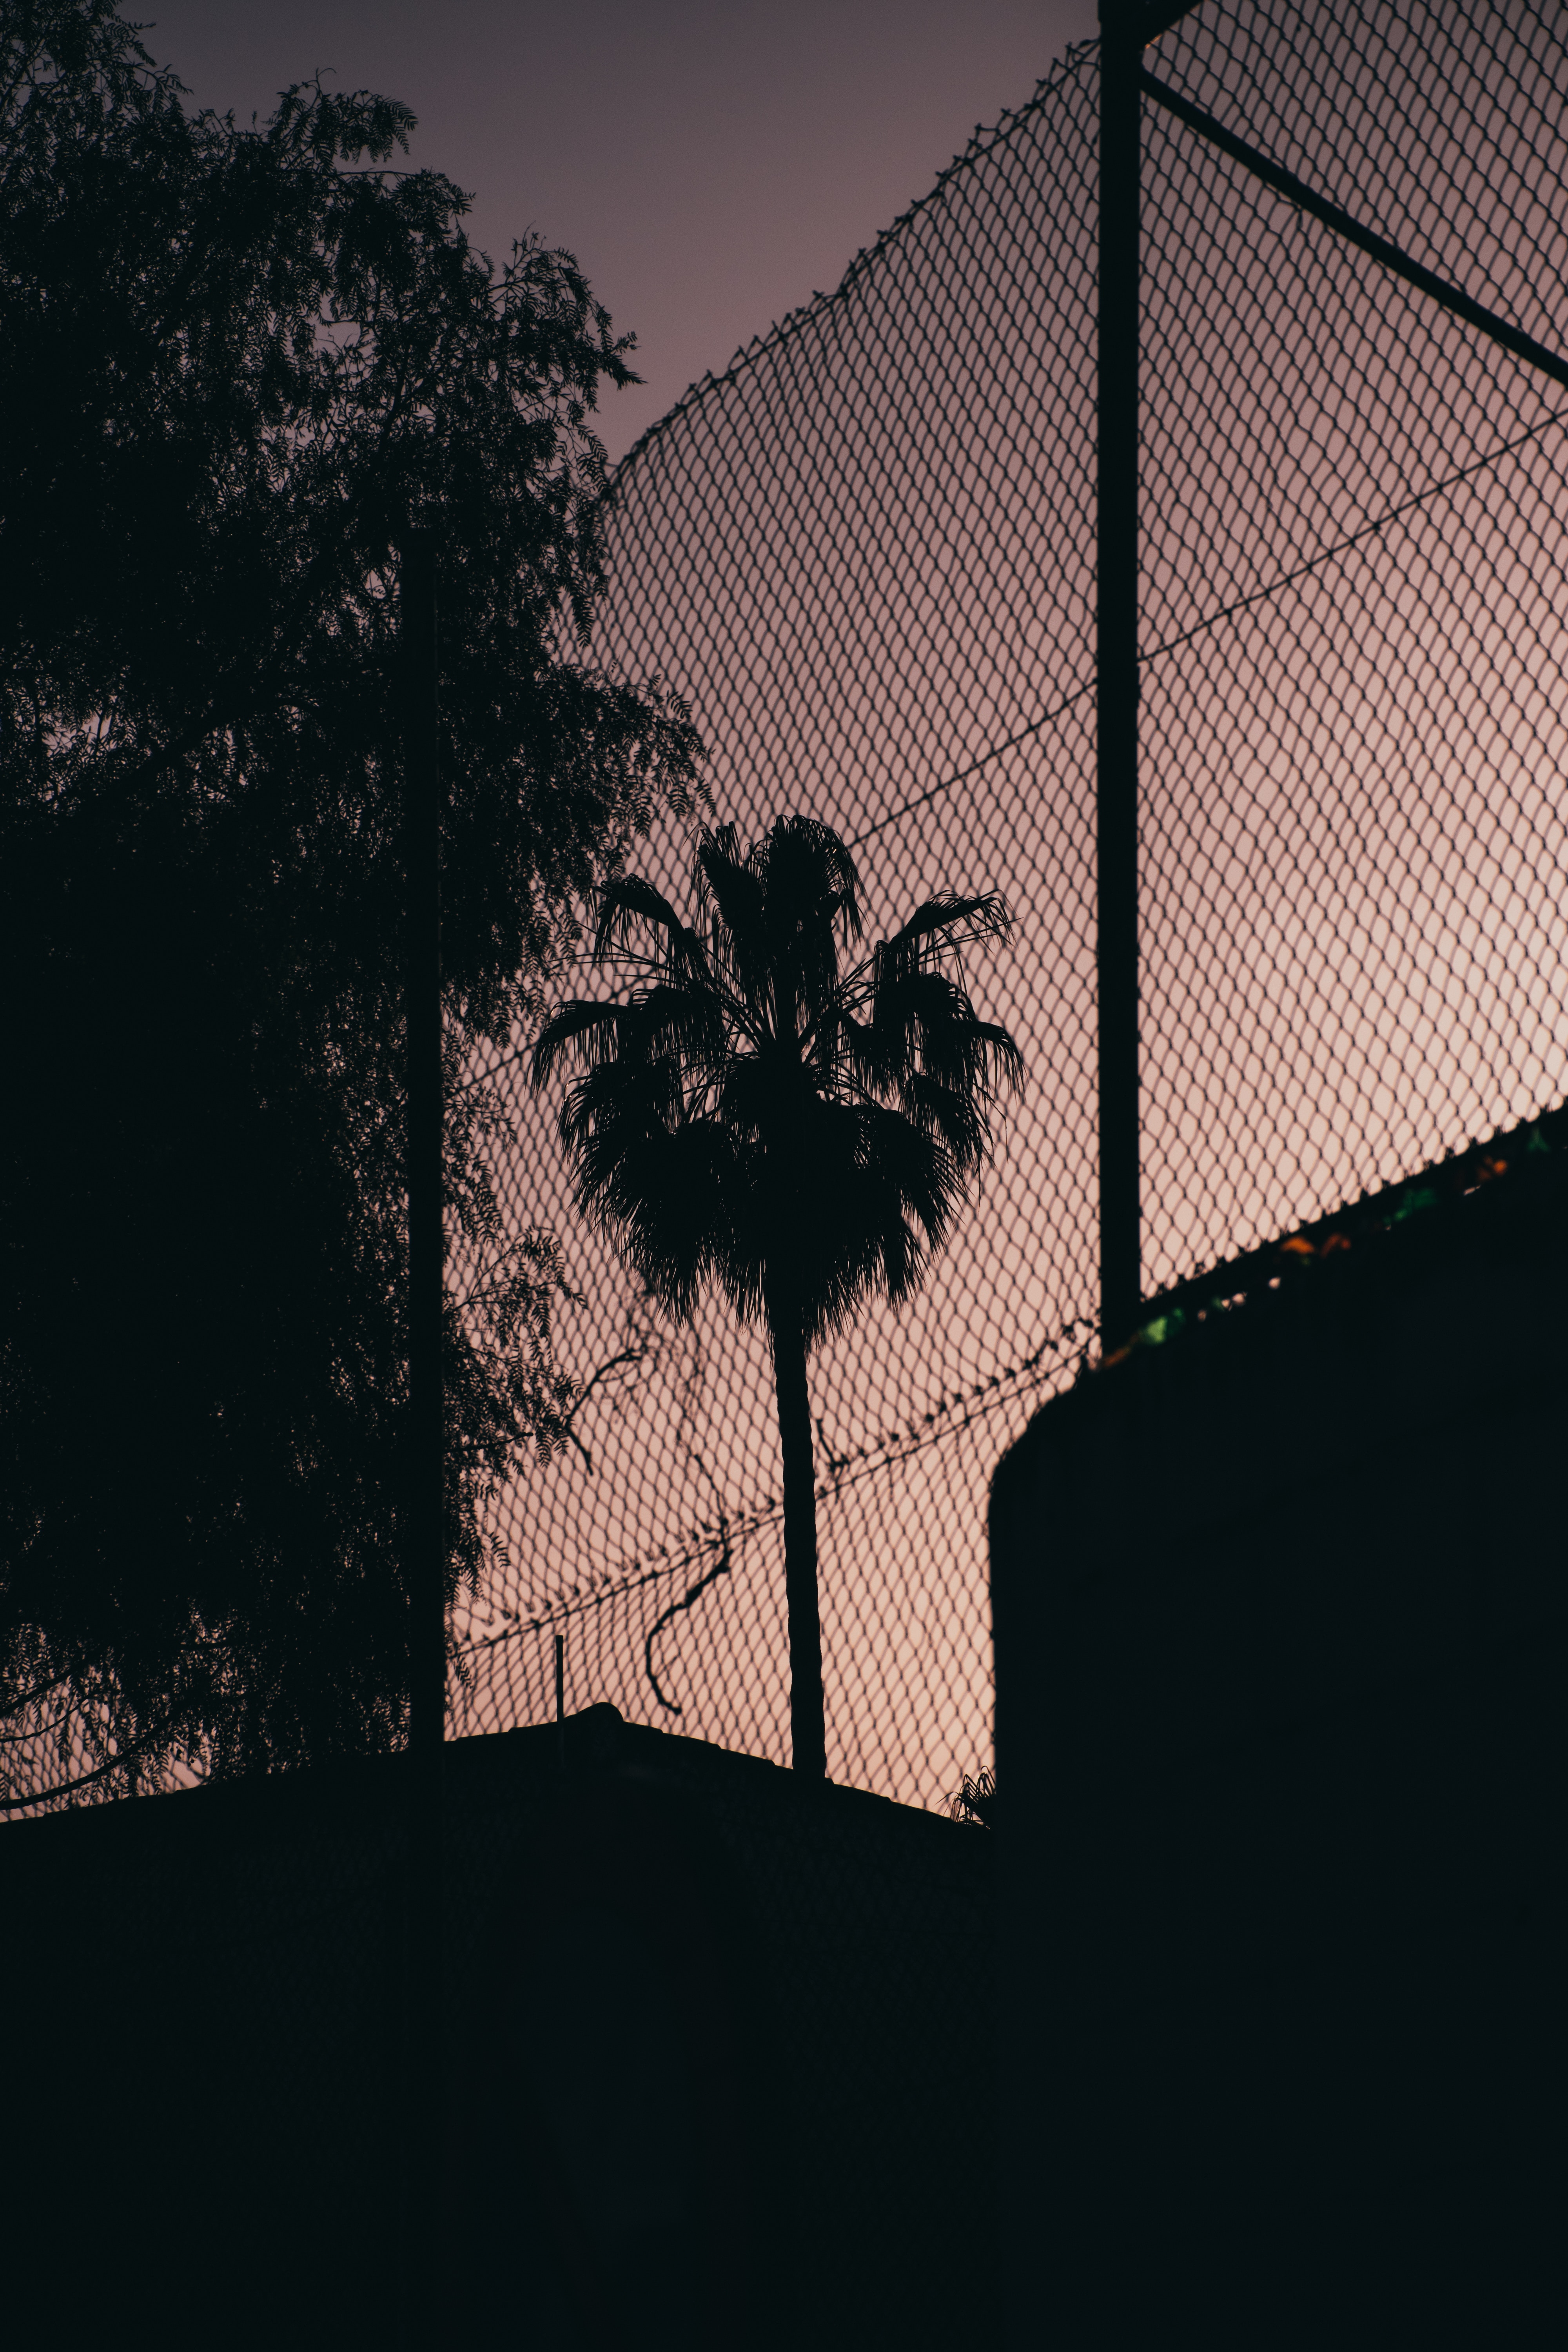 night, dark, palm, grid, fence, darkness